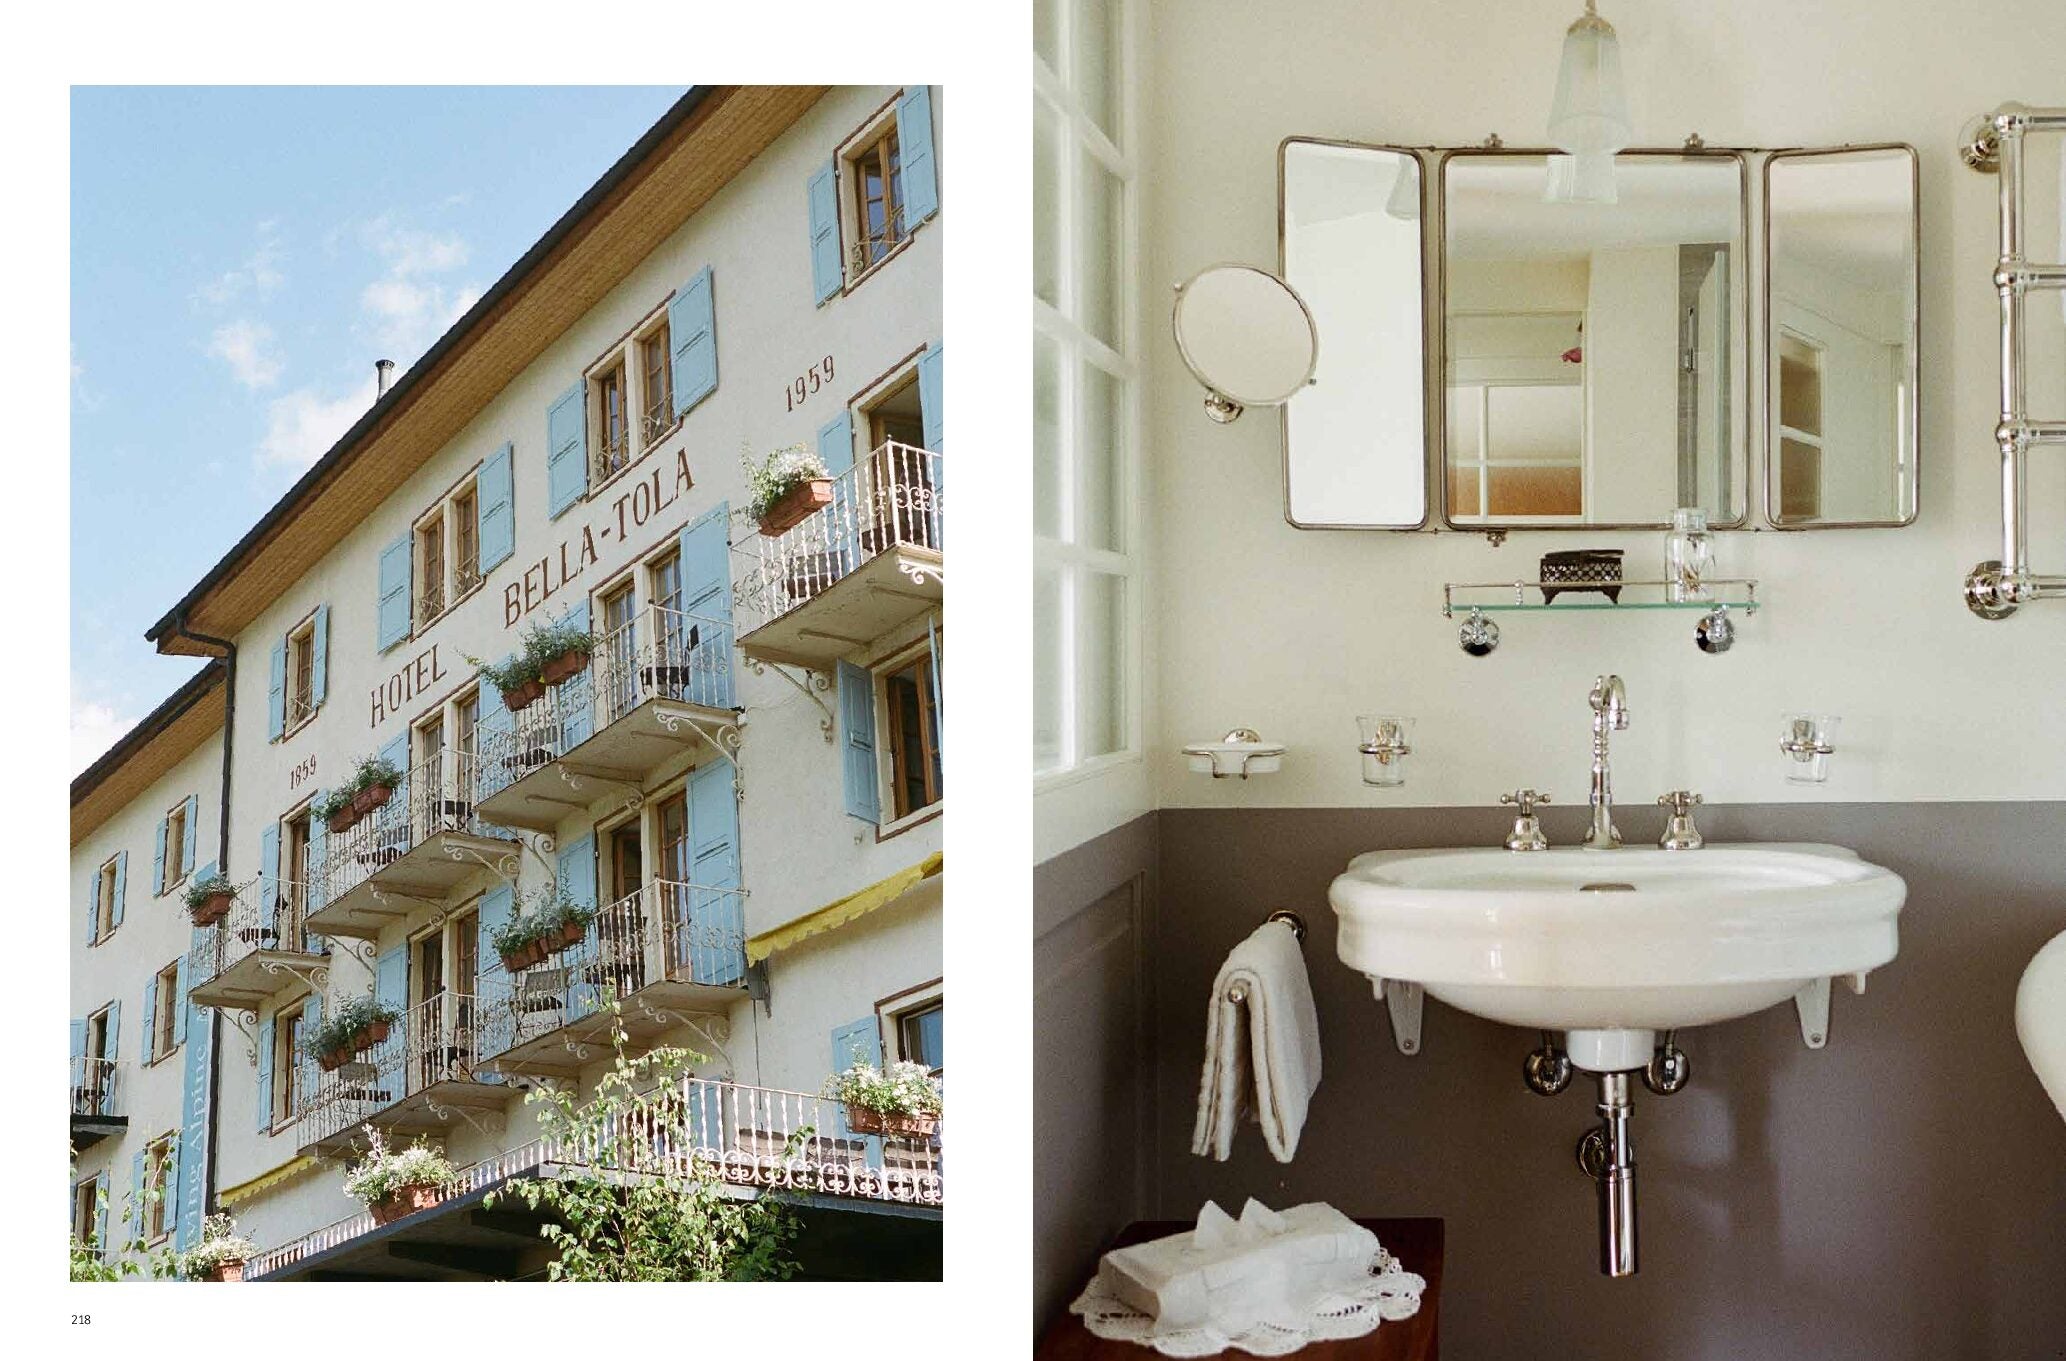 Hotelgeschichten - das Buch von Transhelvetica und den Swiss Historic Hotels präsentiert auf einer Reise durch die Schweiz sämtliche Hotels, angereichert mit Anekdoten.